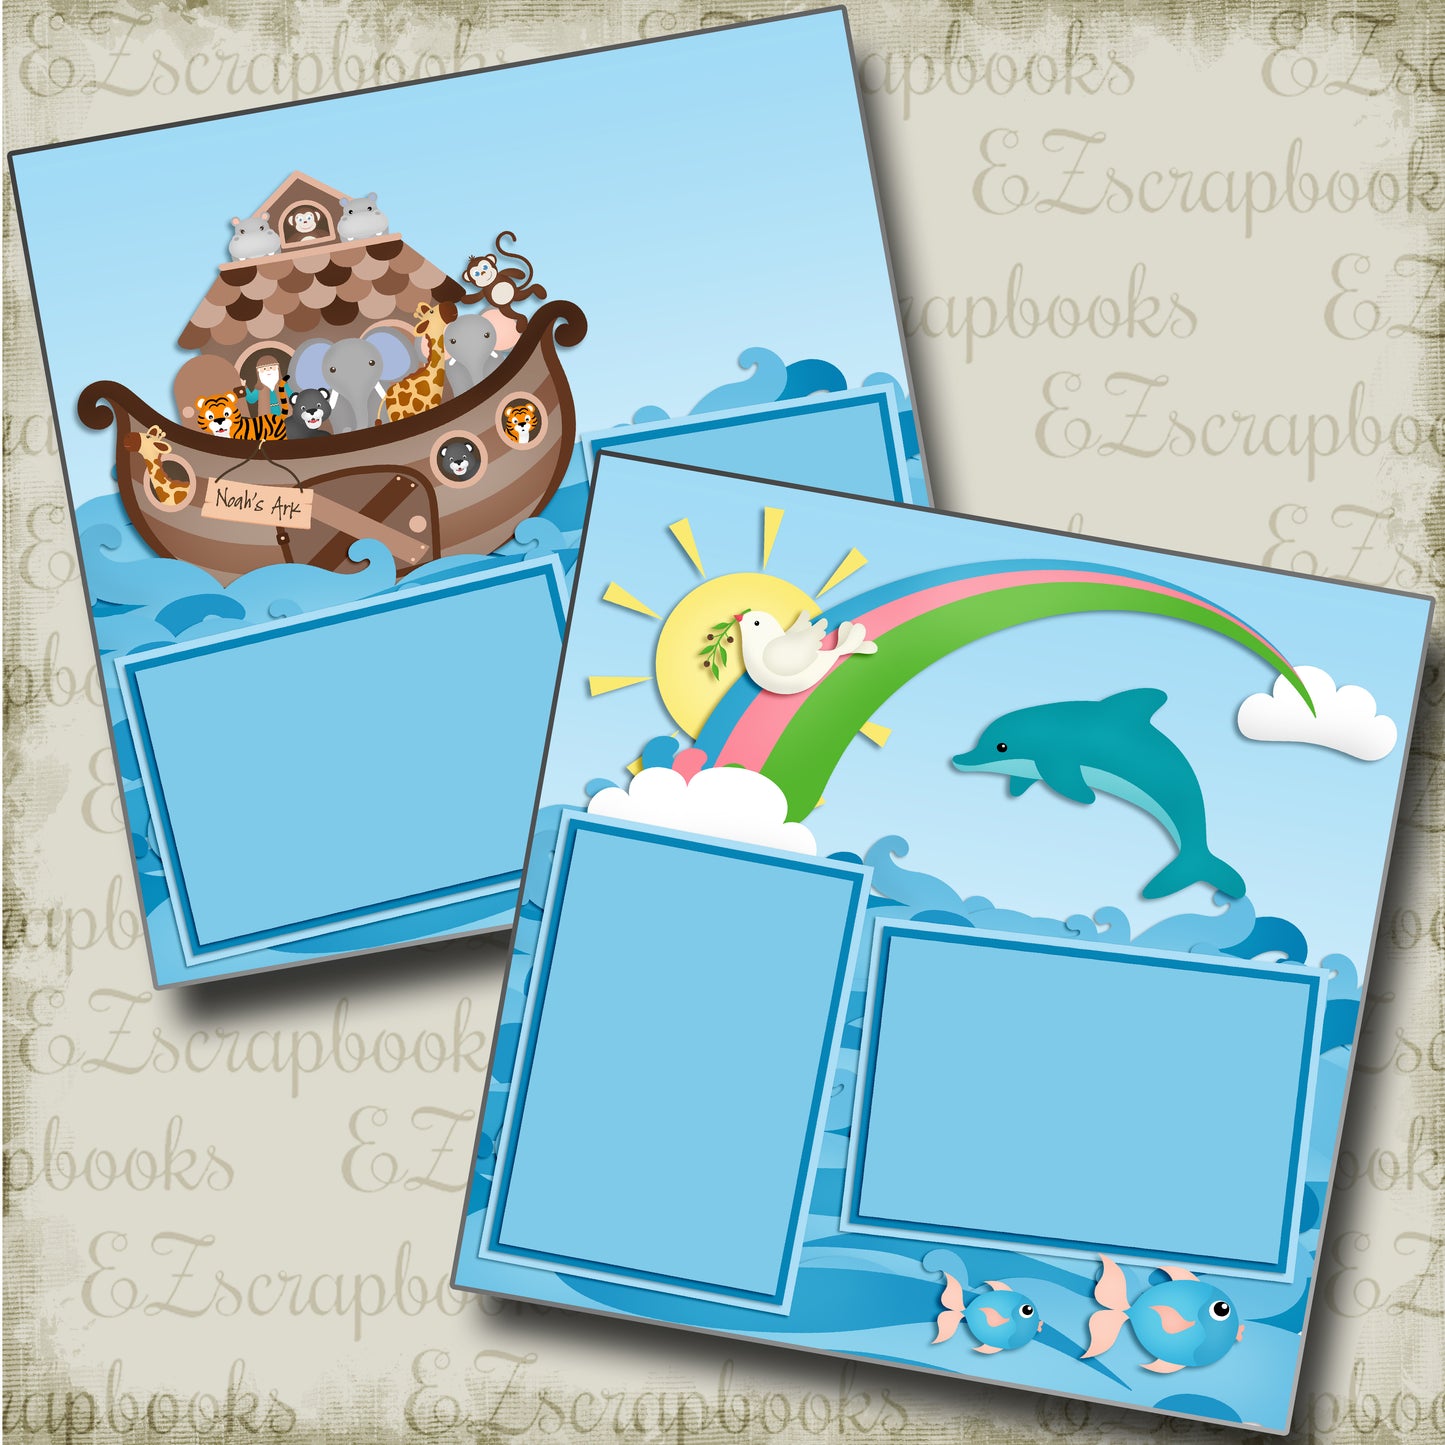 Noah's Ark - 4882 - EZscrapbooks Scrapbook Layouts Beach - Tropical, Faith - Religious, Swimming - Pool